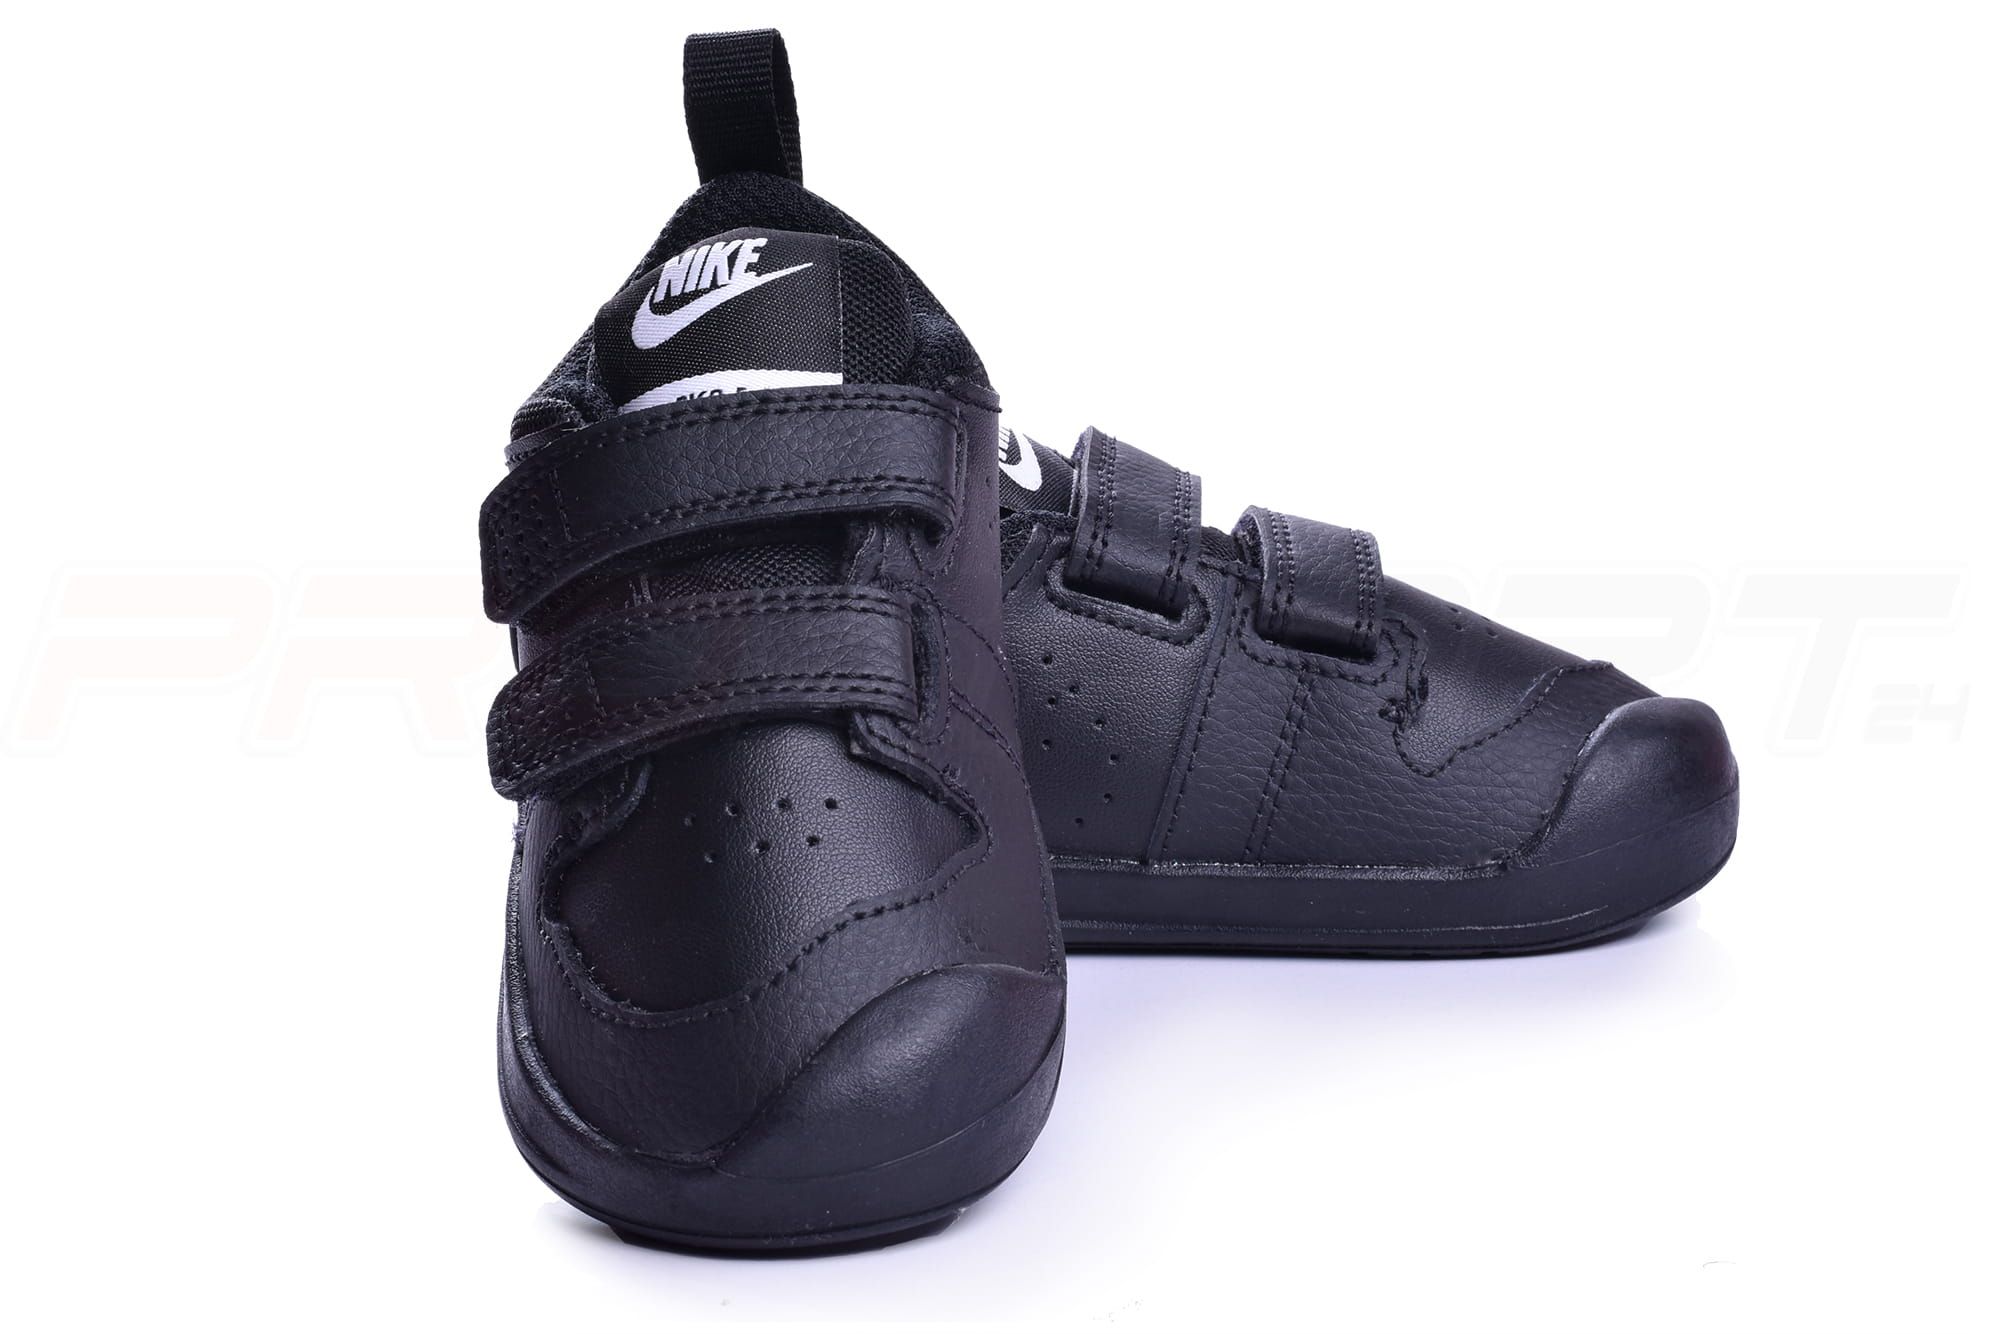 Buty dziecięce NIKE Pico 5 TDV czarne (-001) - 23,5